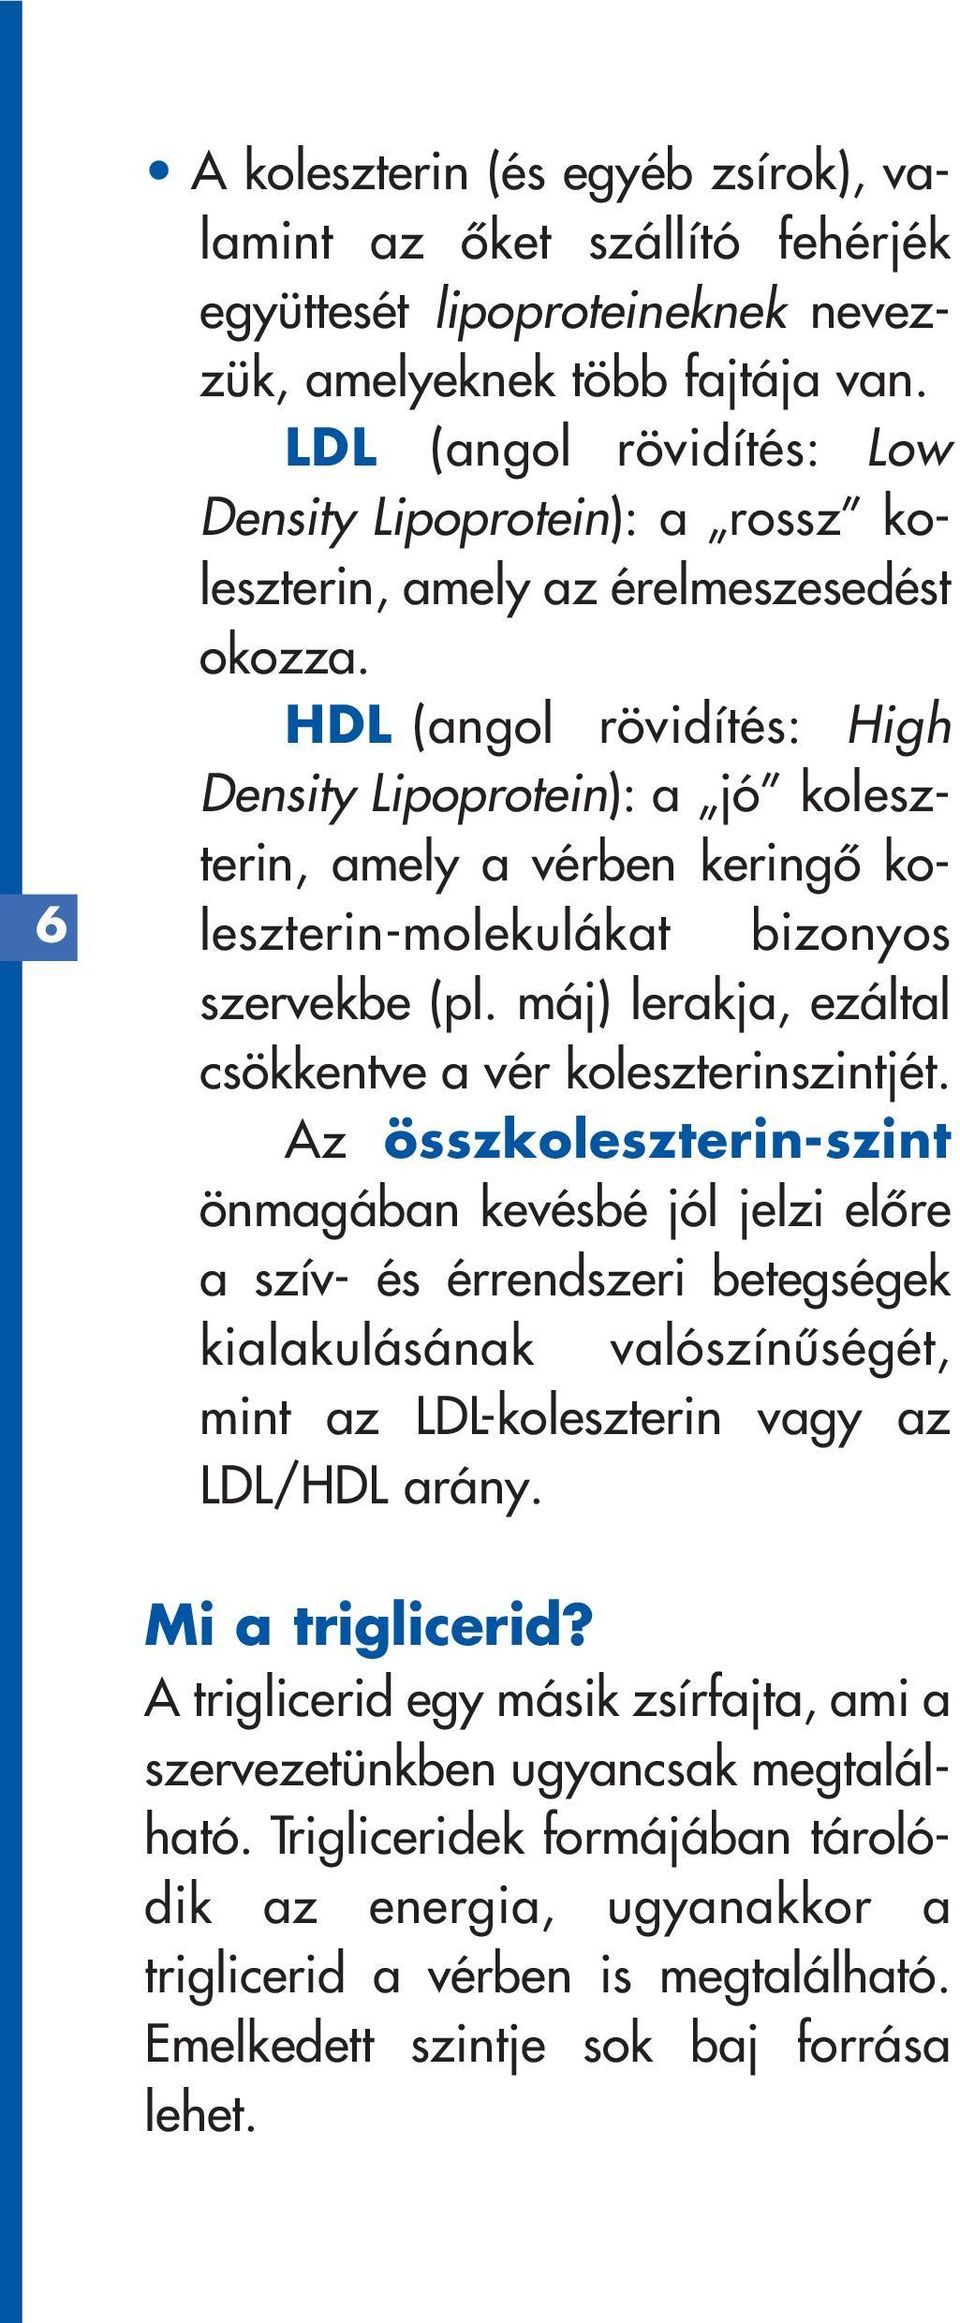 HDL (angol rövidítés: High Density Lipoprotein): a jó koleszterin, amely a vérben keringô koleszterin-molekulákat bizonyos szervekbe (pl. máj) lerakja, ezáltal csökkentve a vér koleszterinszintjét.